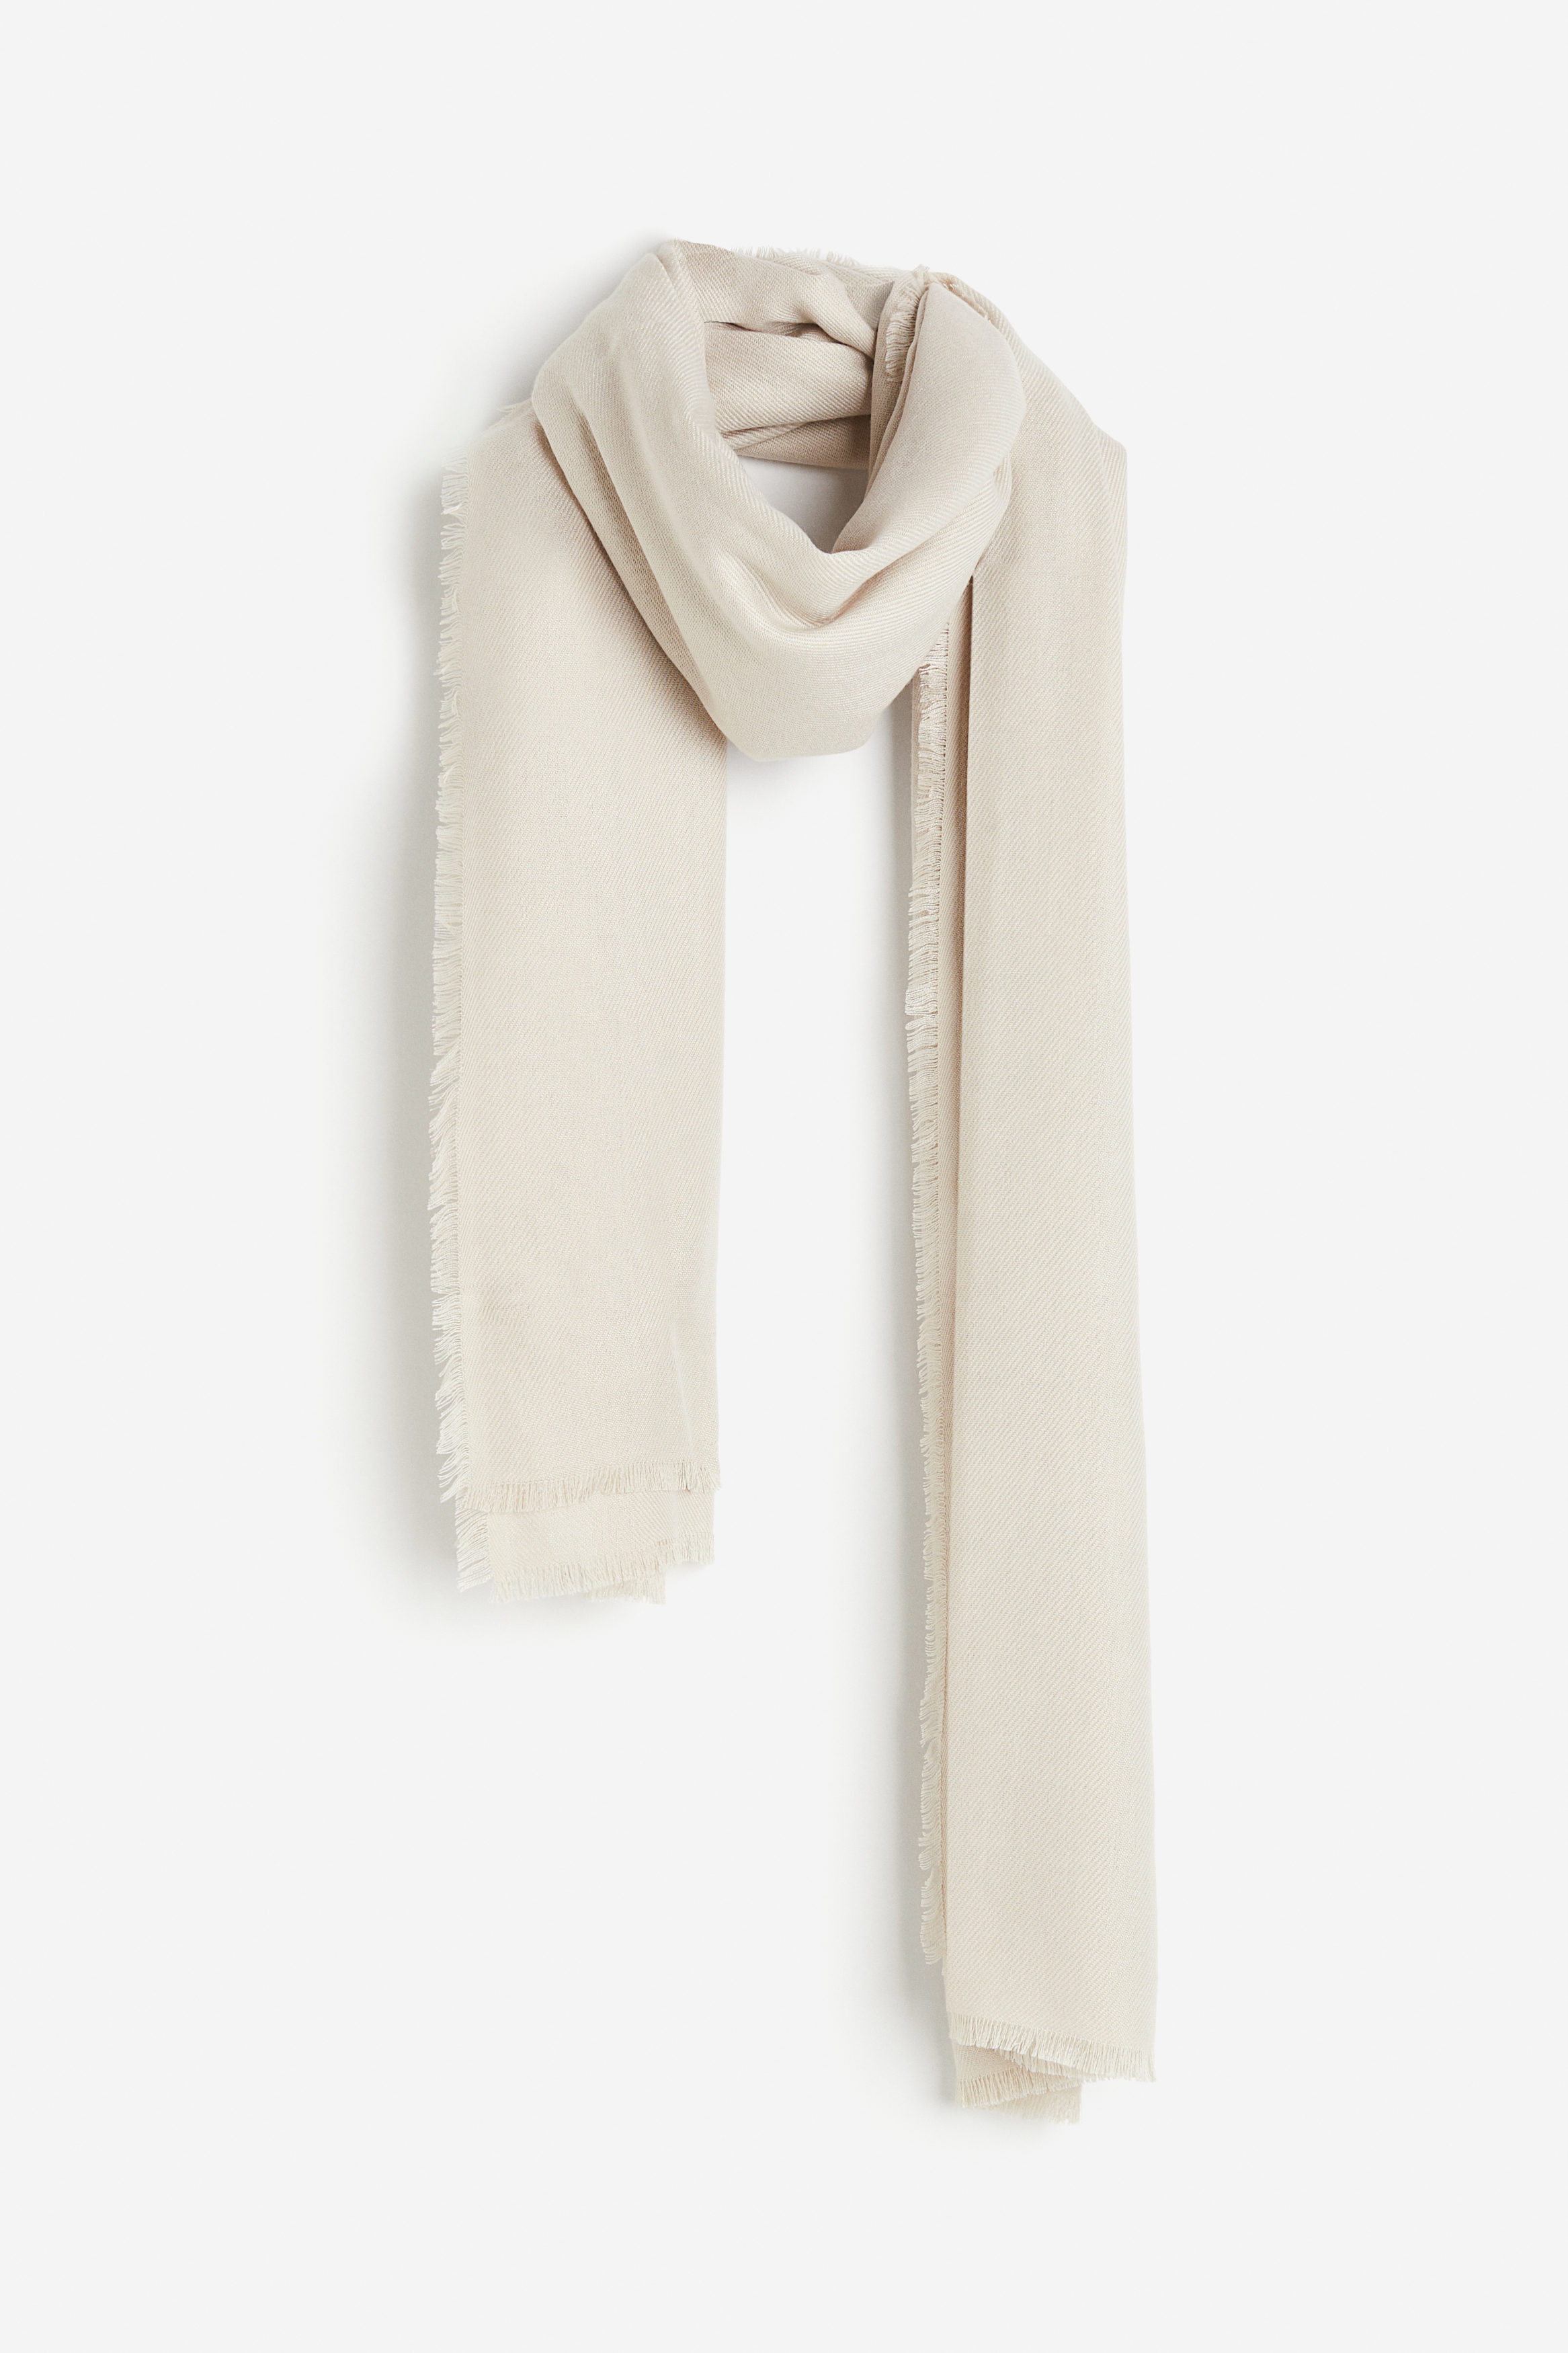 Billede af H&M Halstørklæde Gråbeige, Halstørklæder. Farve: Greige I størrelse 190x100 cm